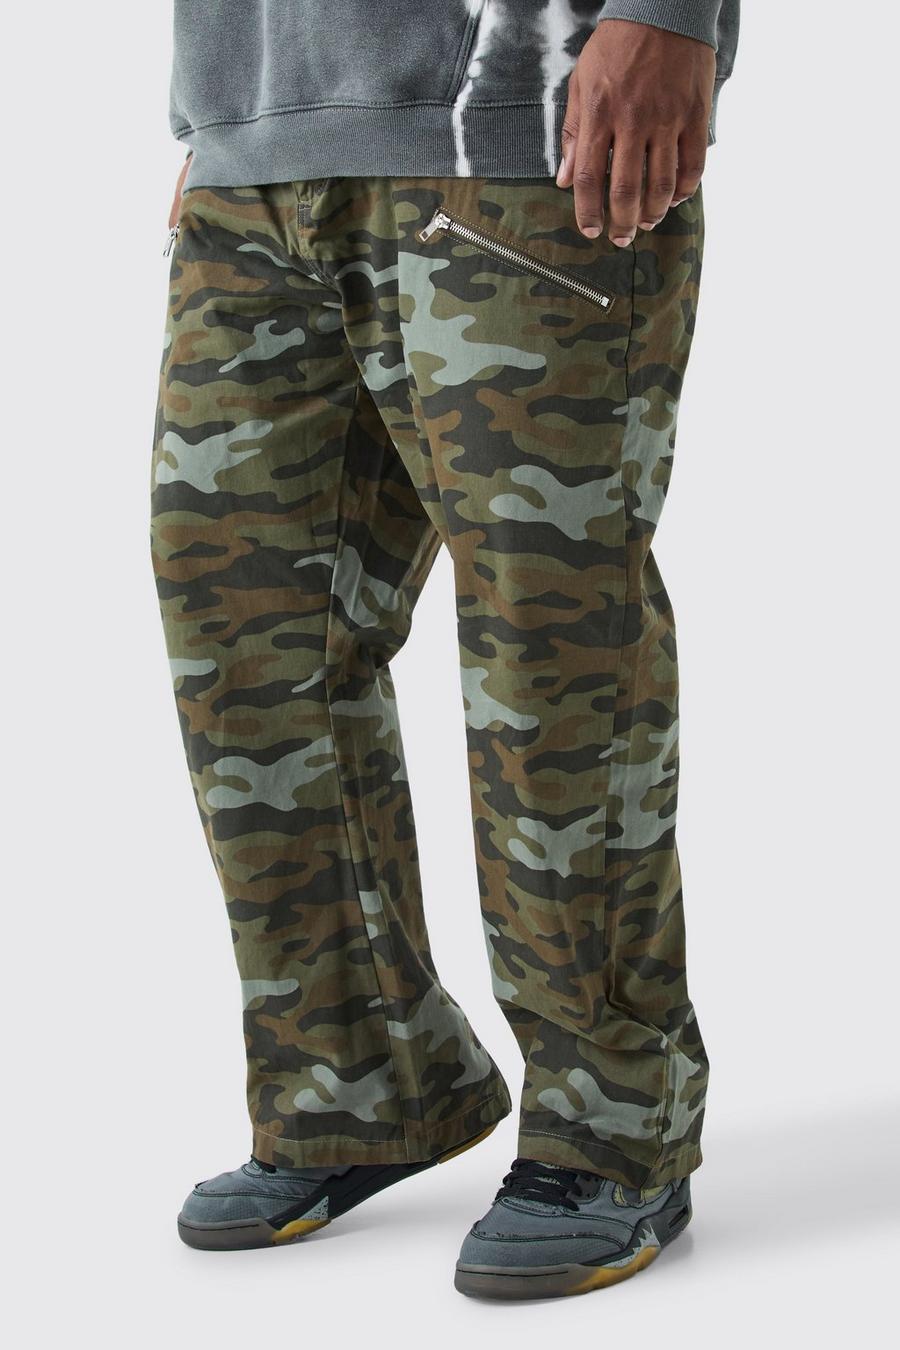 Pantaloni Plus Size dritti in twill in fantasia militare con inserti e zip a vita fissa, Multi